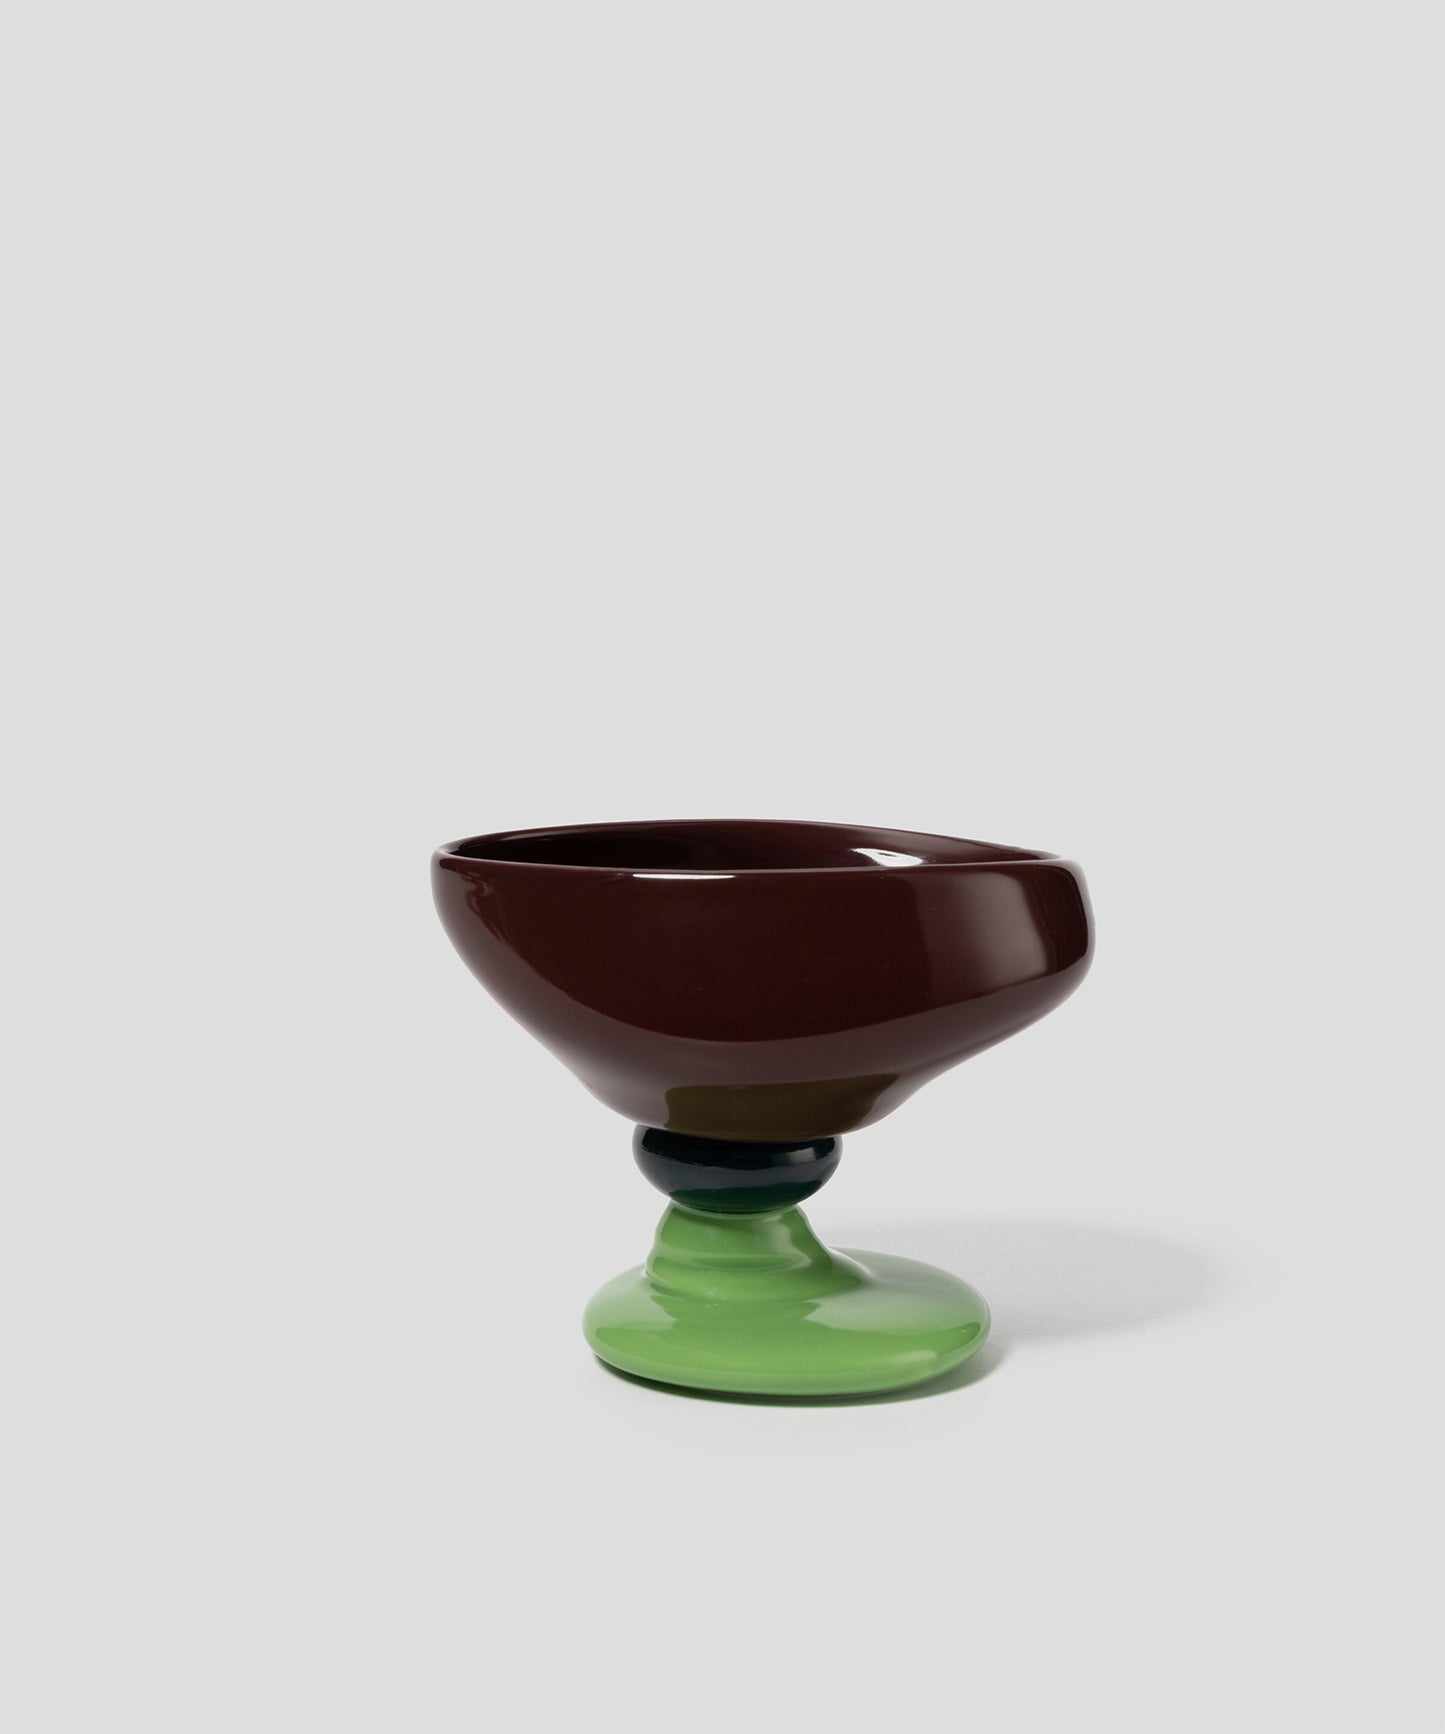 HOME Beaded-shape Porcelain Dessert Bowl